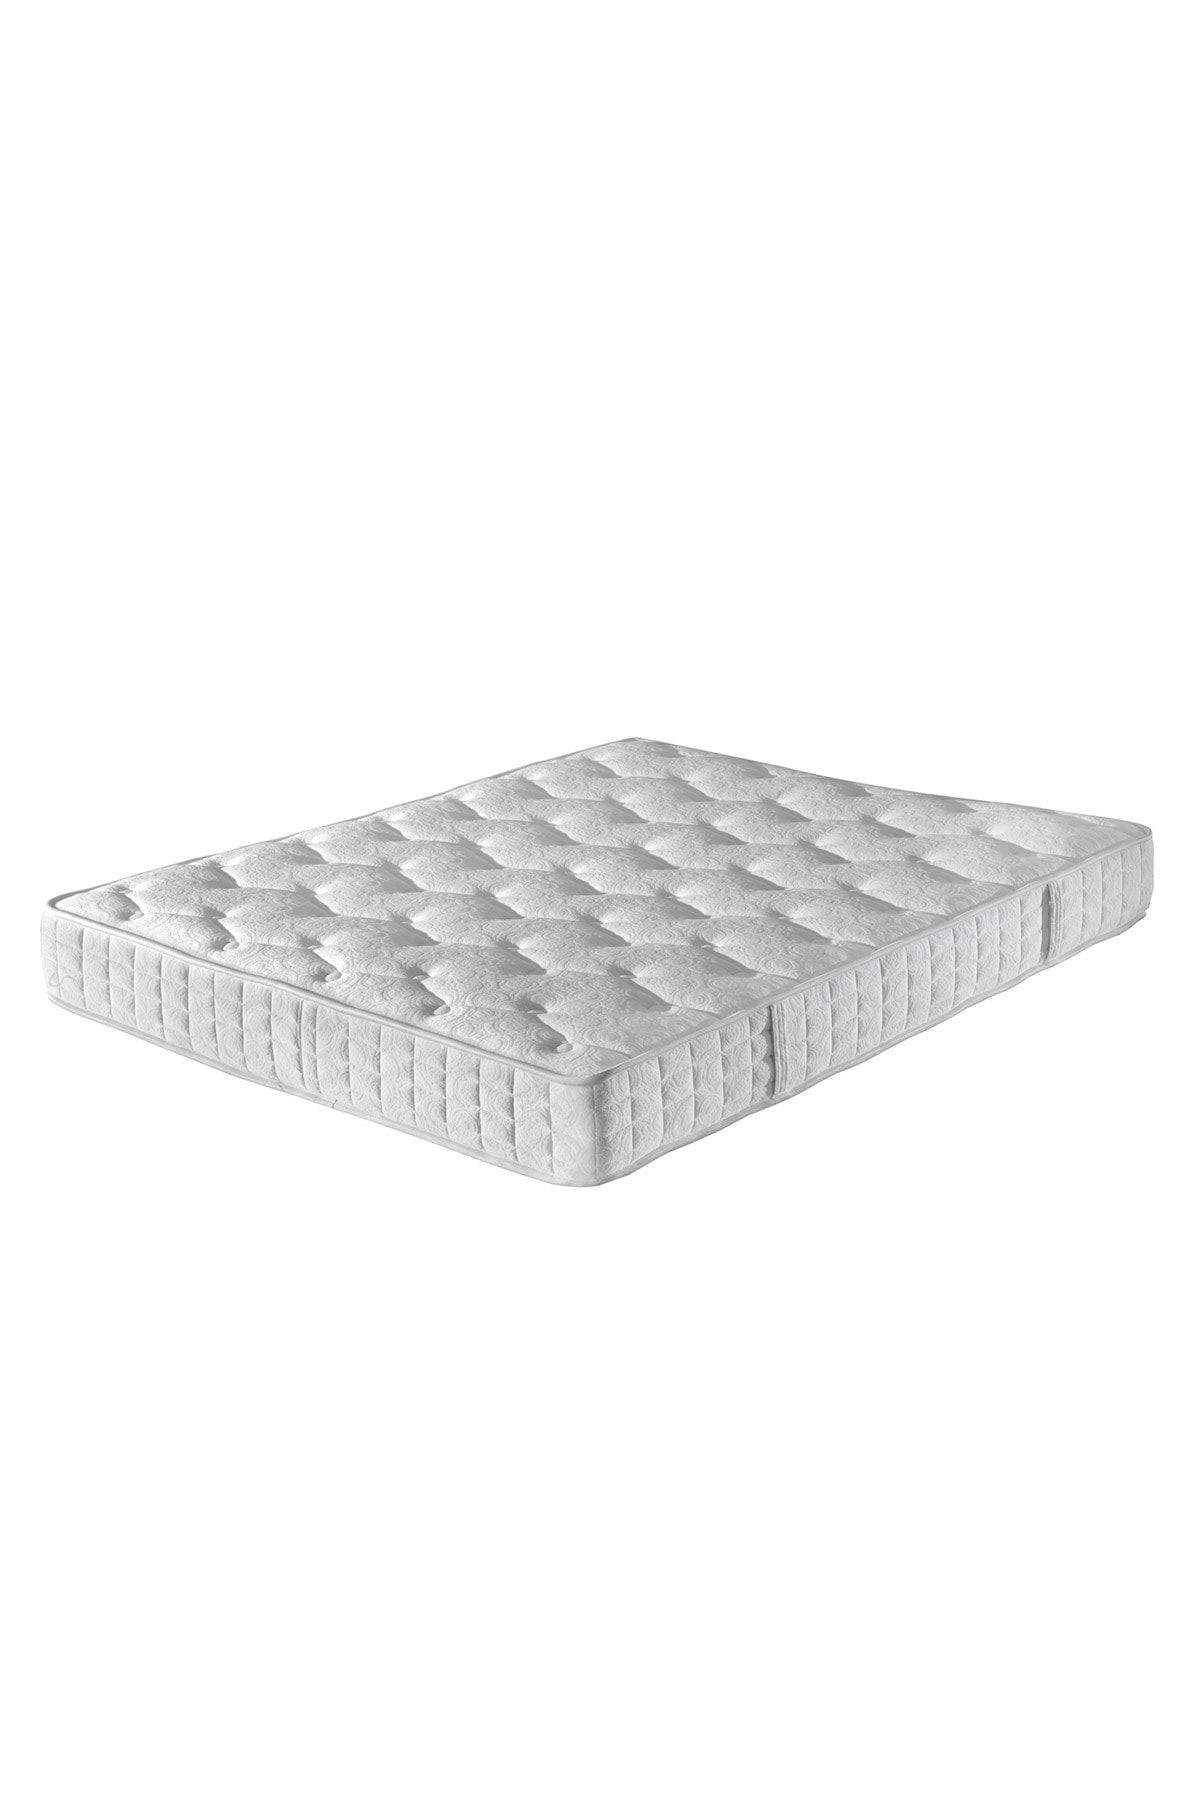 Yataş Bedding Silver Therapy DHT Yaylı Seri Yatak Fiyatı, Yorumları